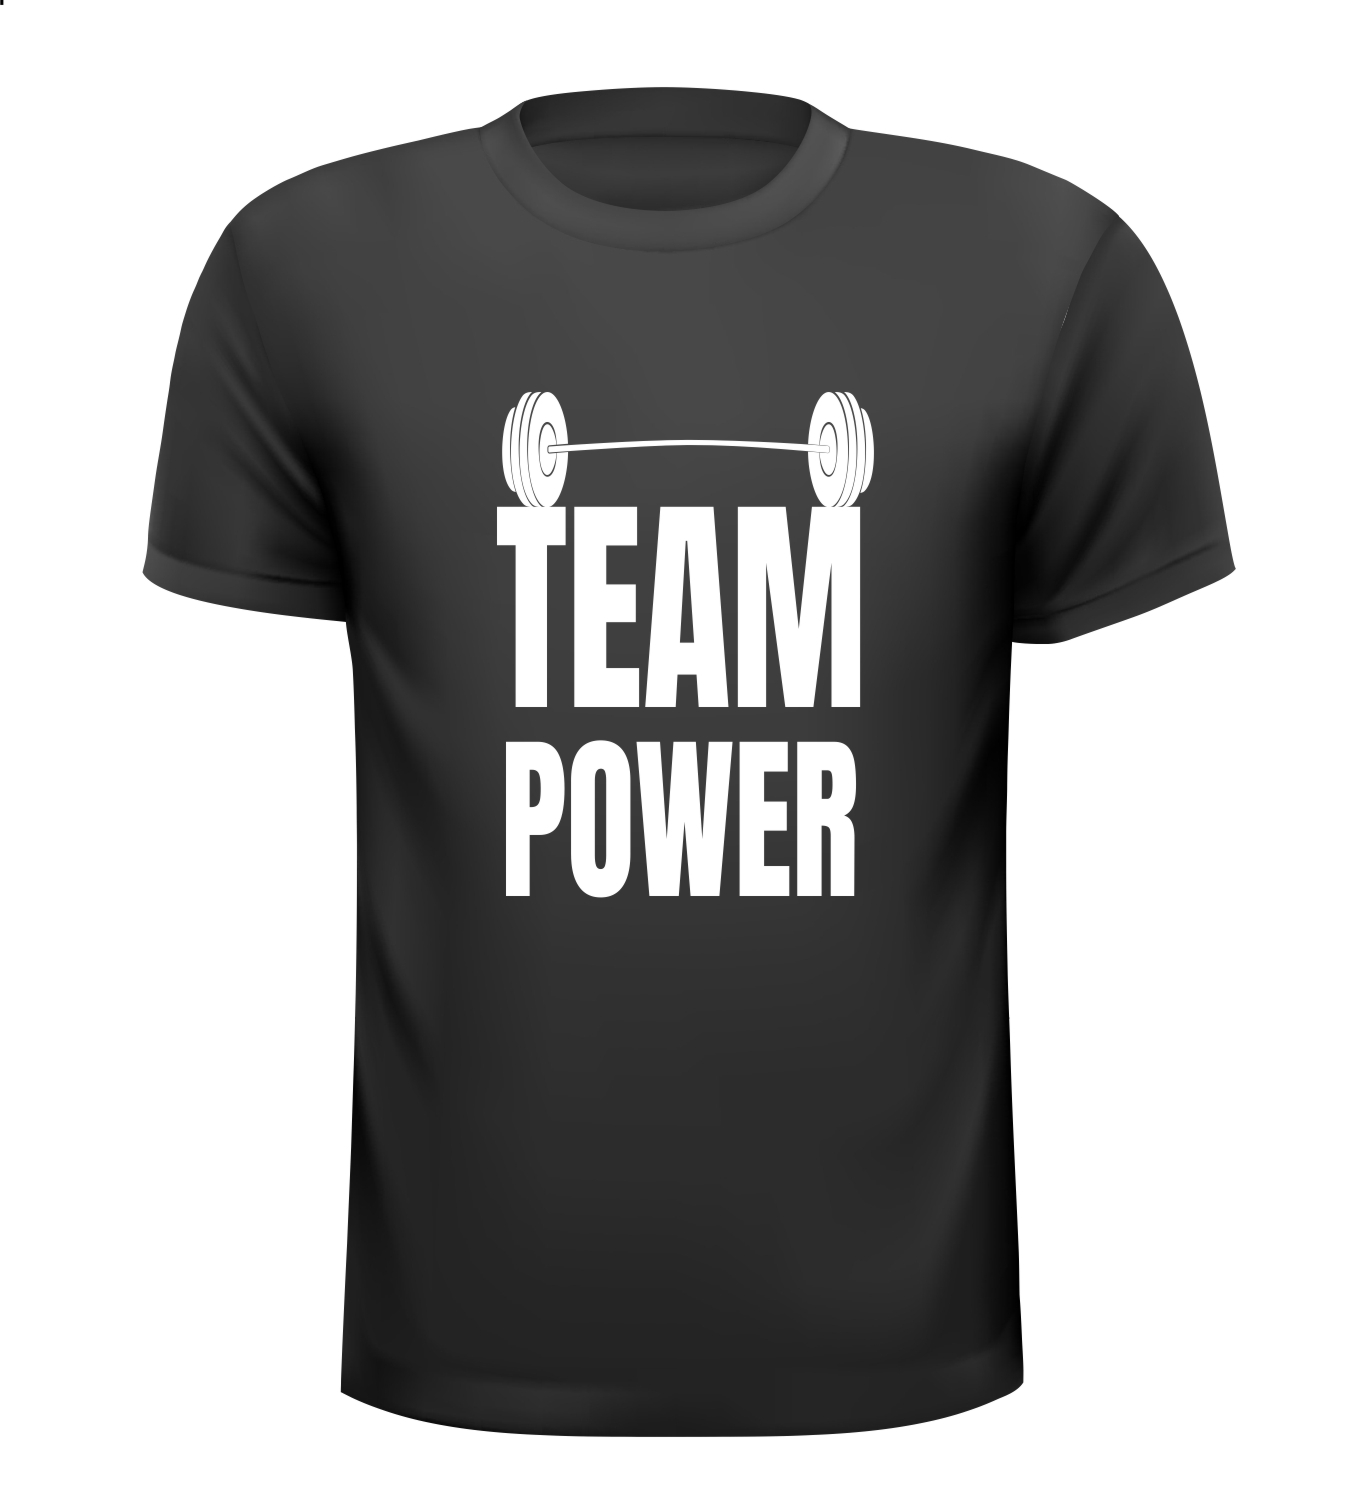 T-shirt voor Team power